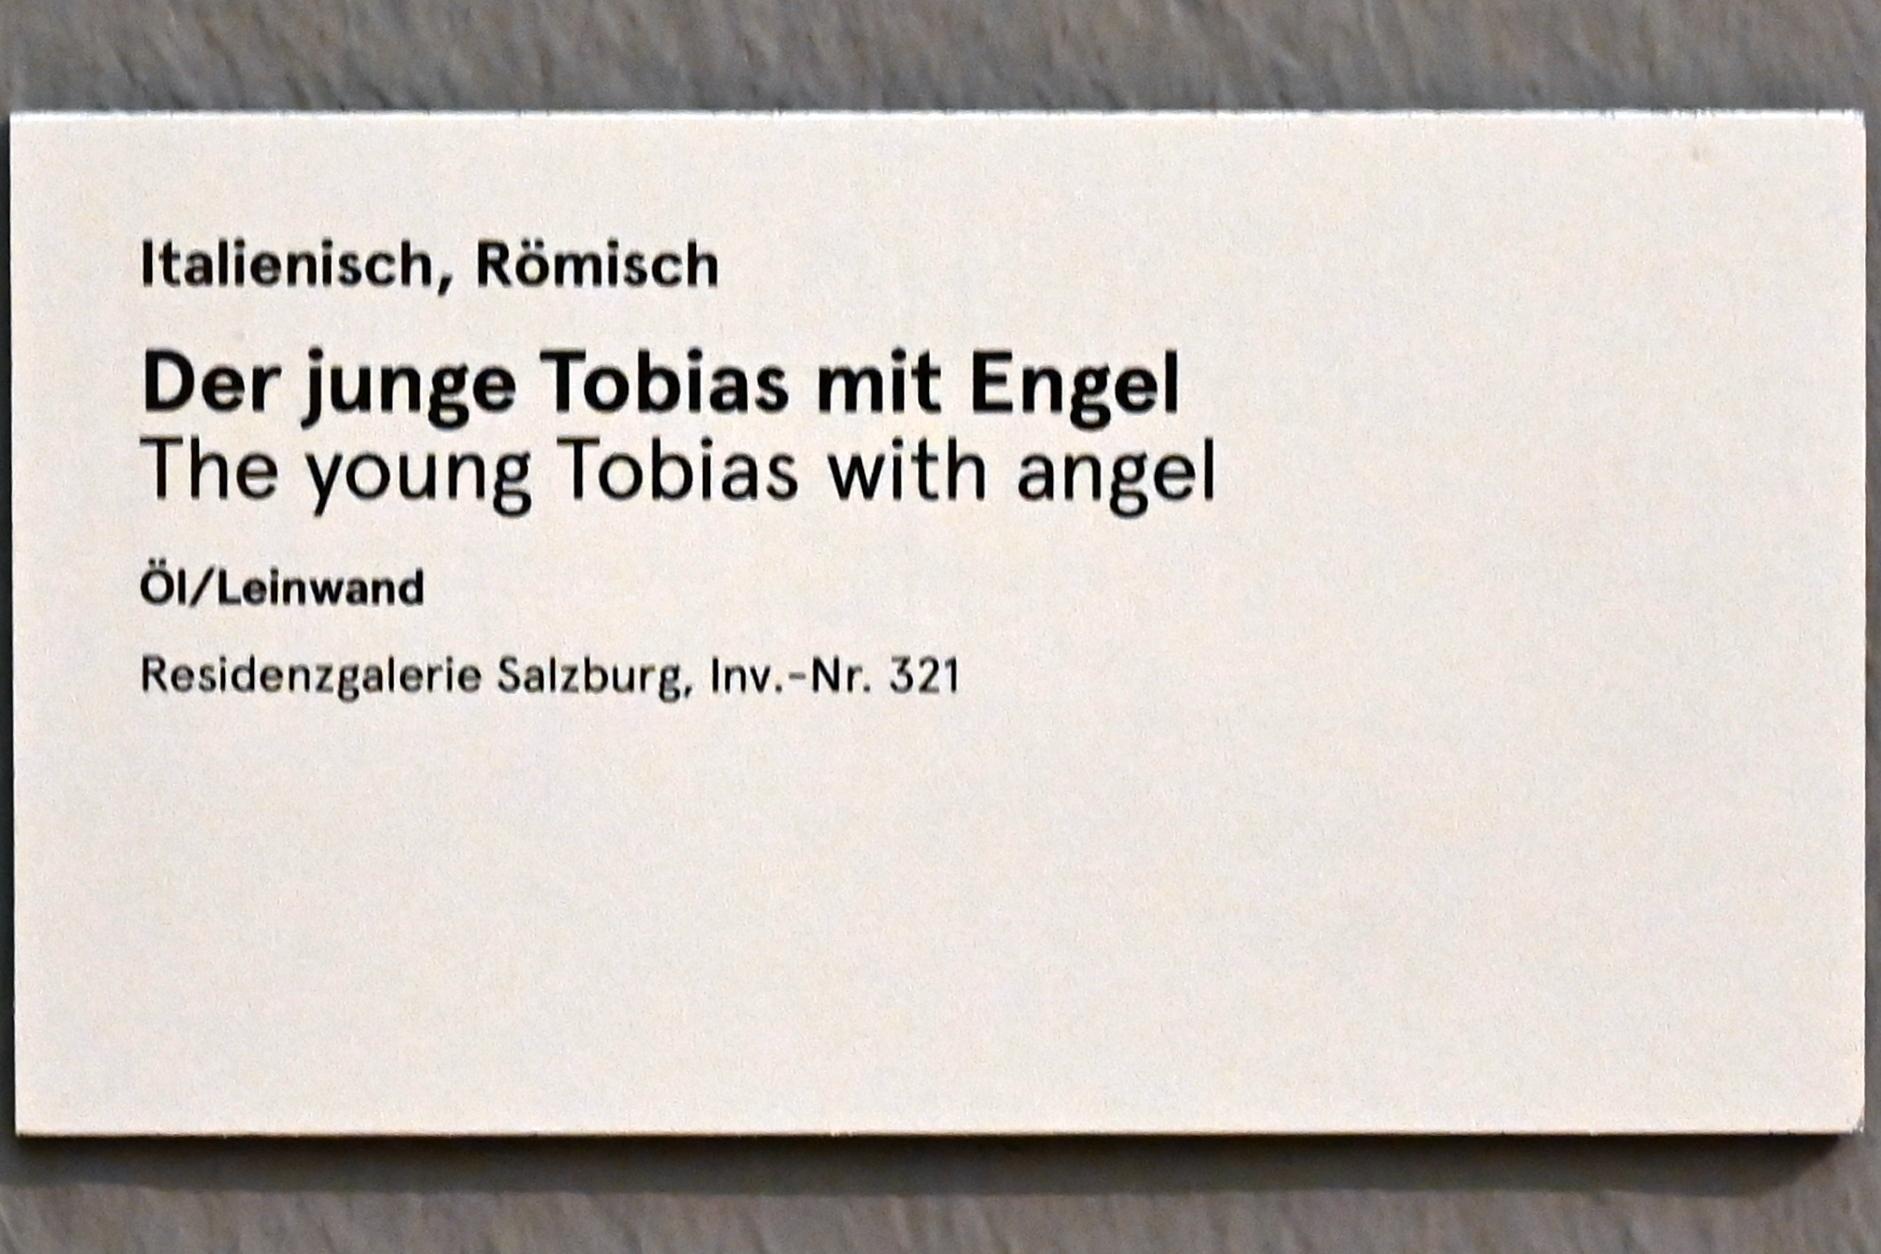 Der junge Tobias mit Engel, Salzburg, Salzburger Residenz, Residenzgalerie, Undatiert, Bild 2/2